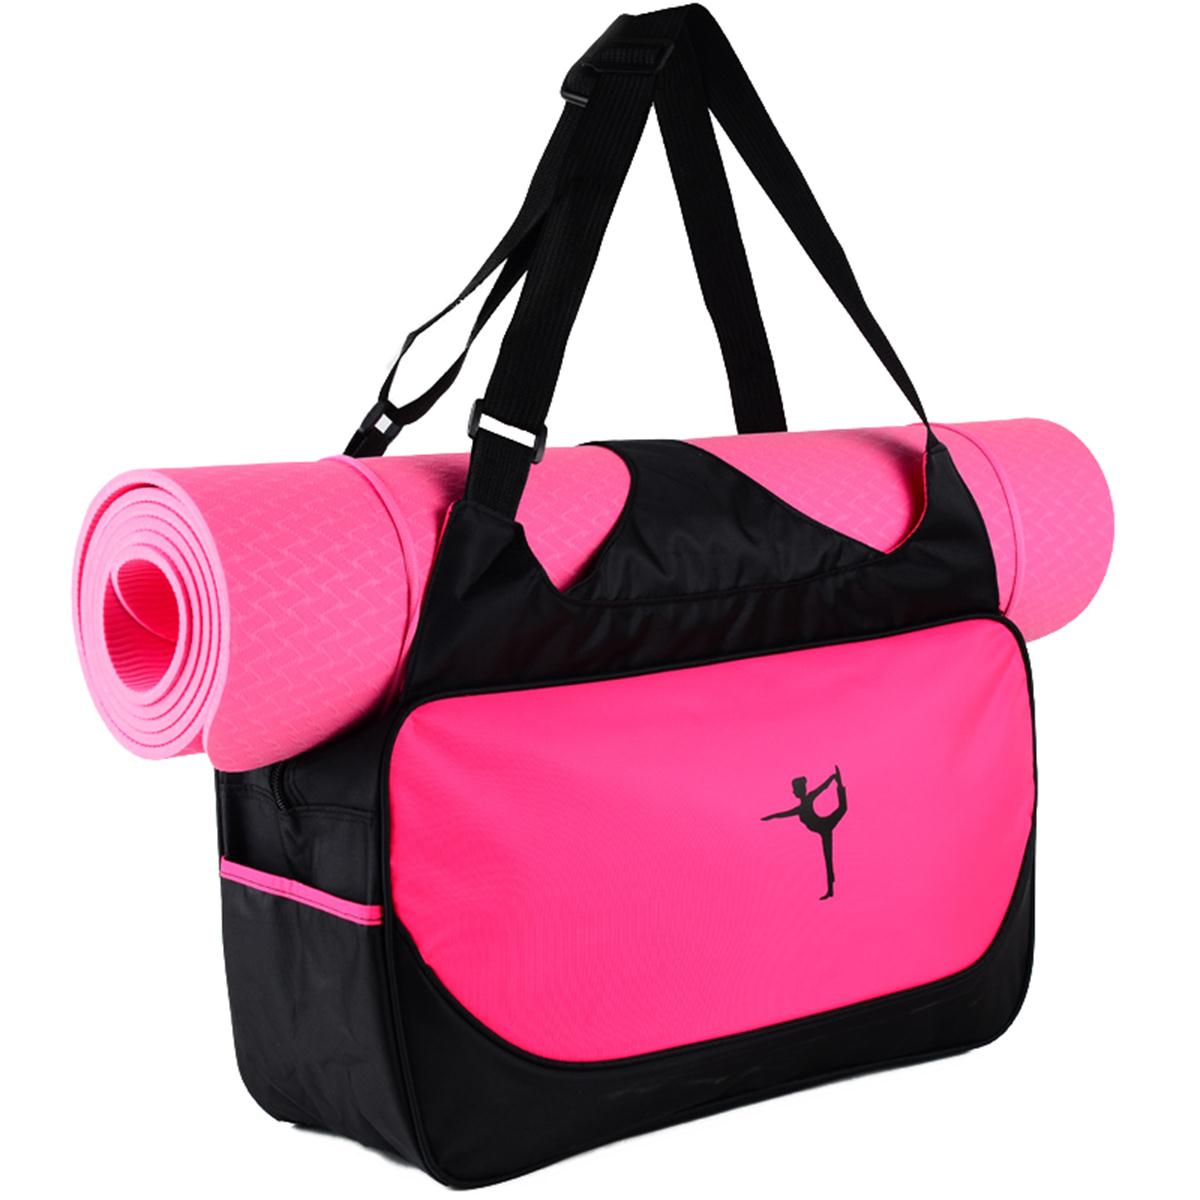 100% RPET multi colors Yoga matten holder gym bag with shoulder strap